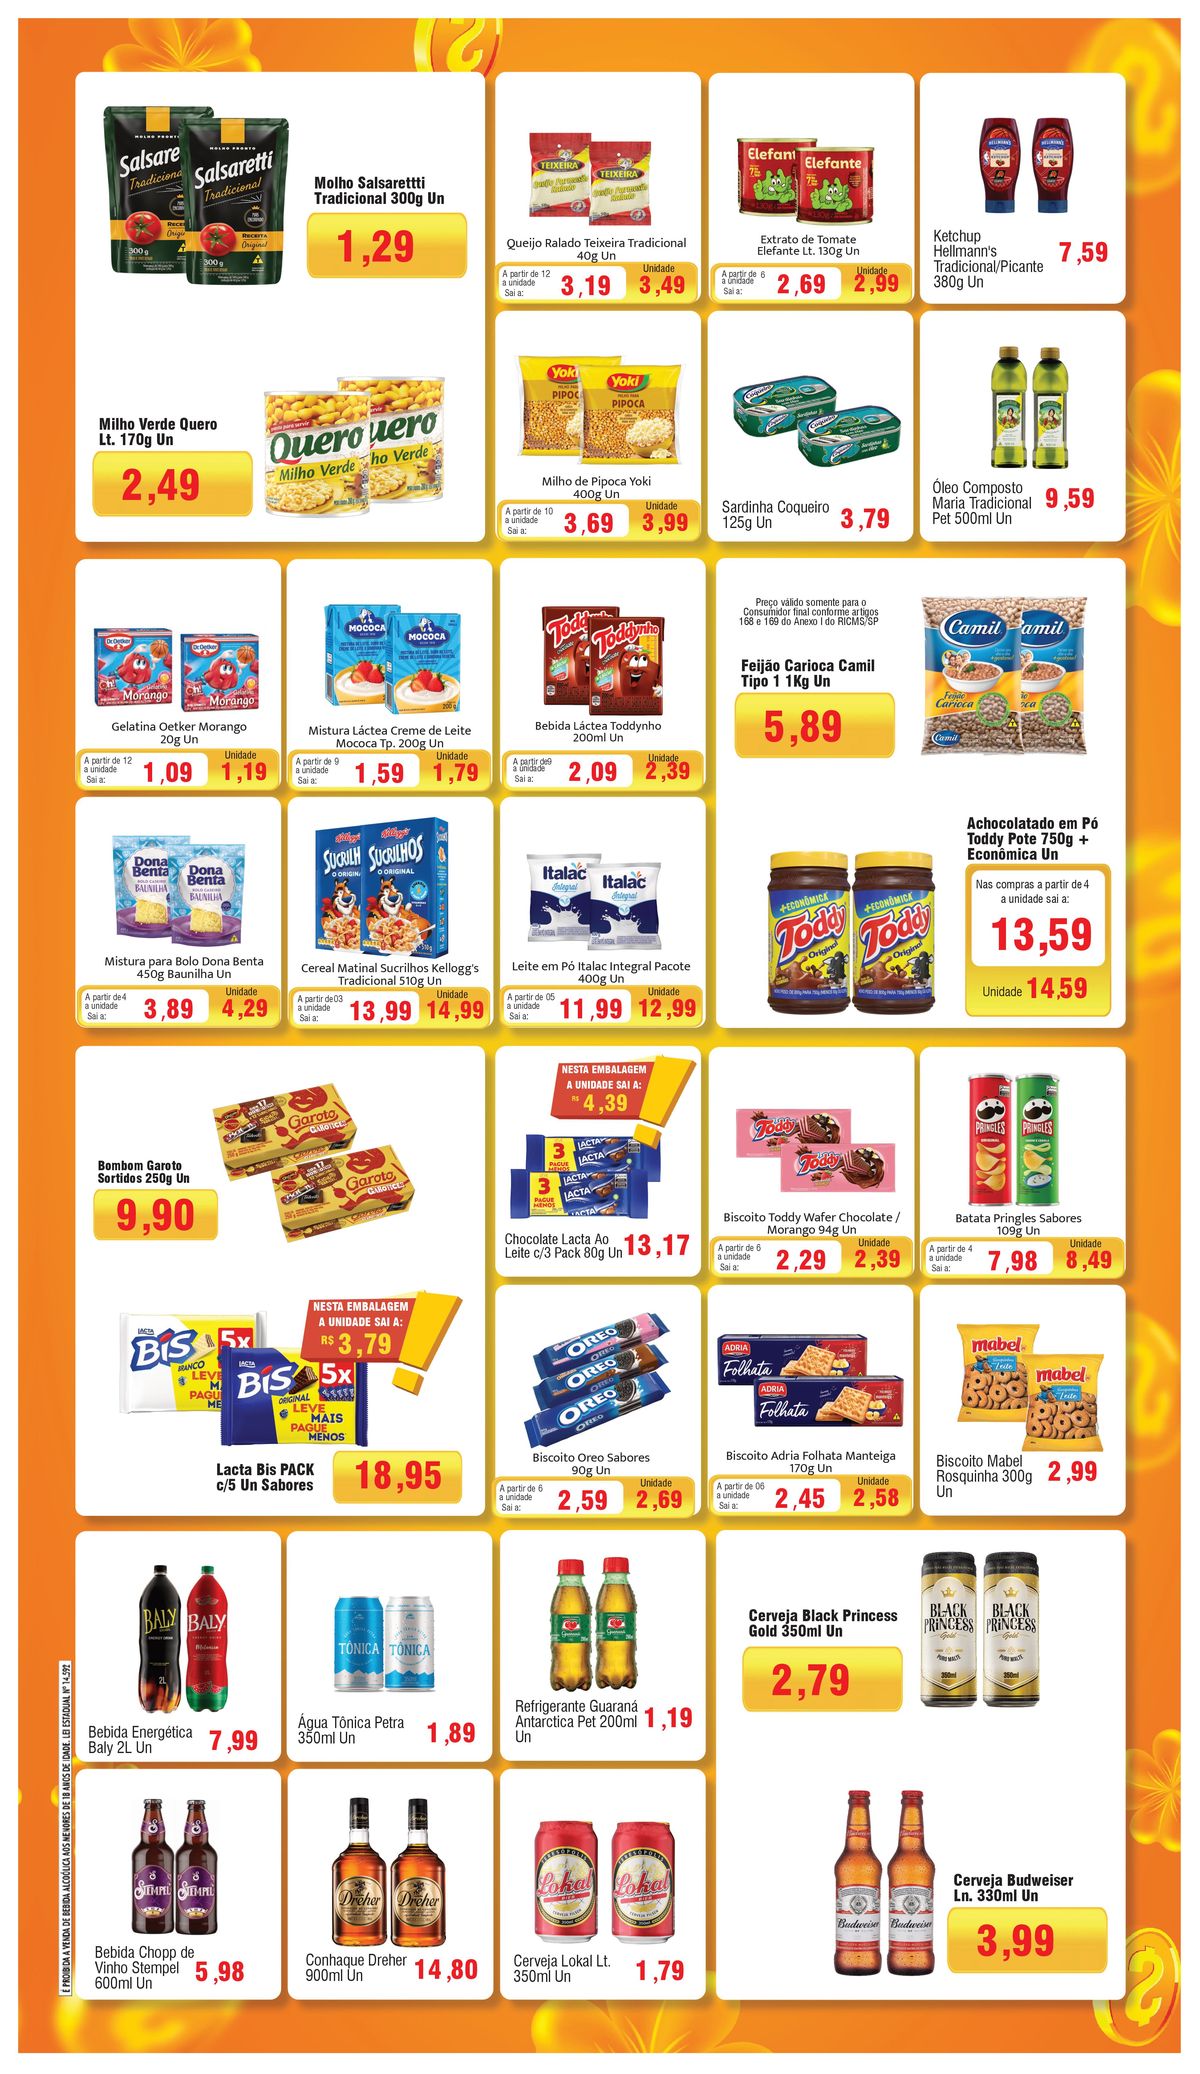 Promoções em Supermercados: Molho Salsarettti, Queijo Ralado Teixeira, Milho de Pipoca Yoki e mais